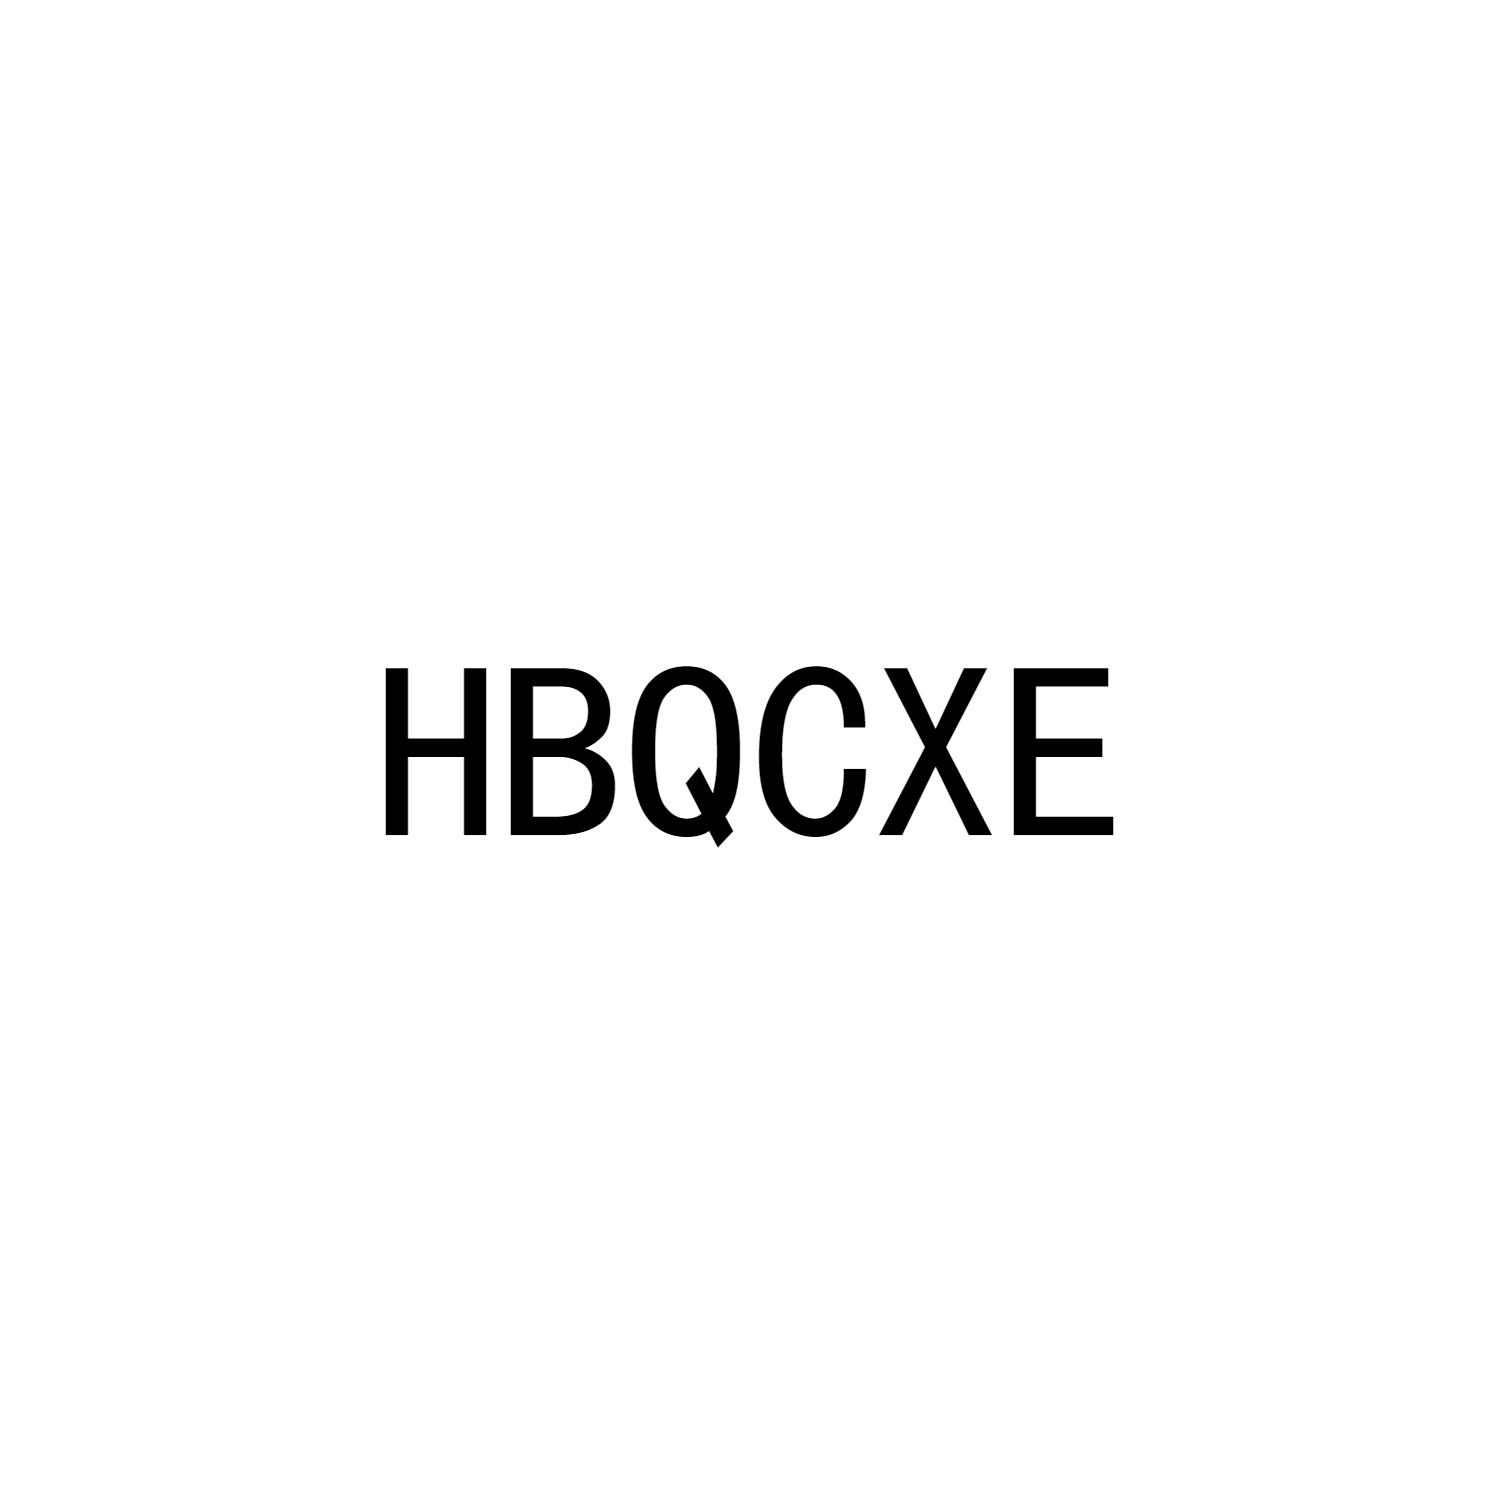 HBQCXE